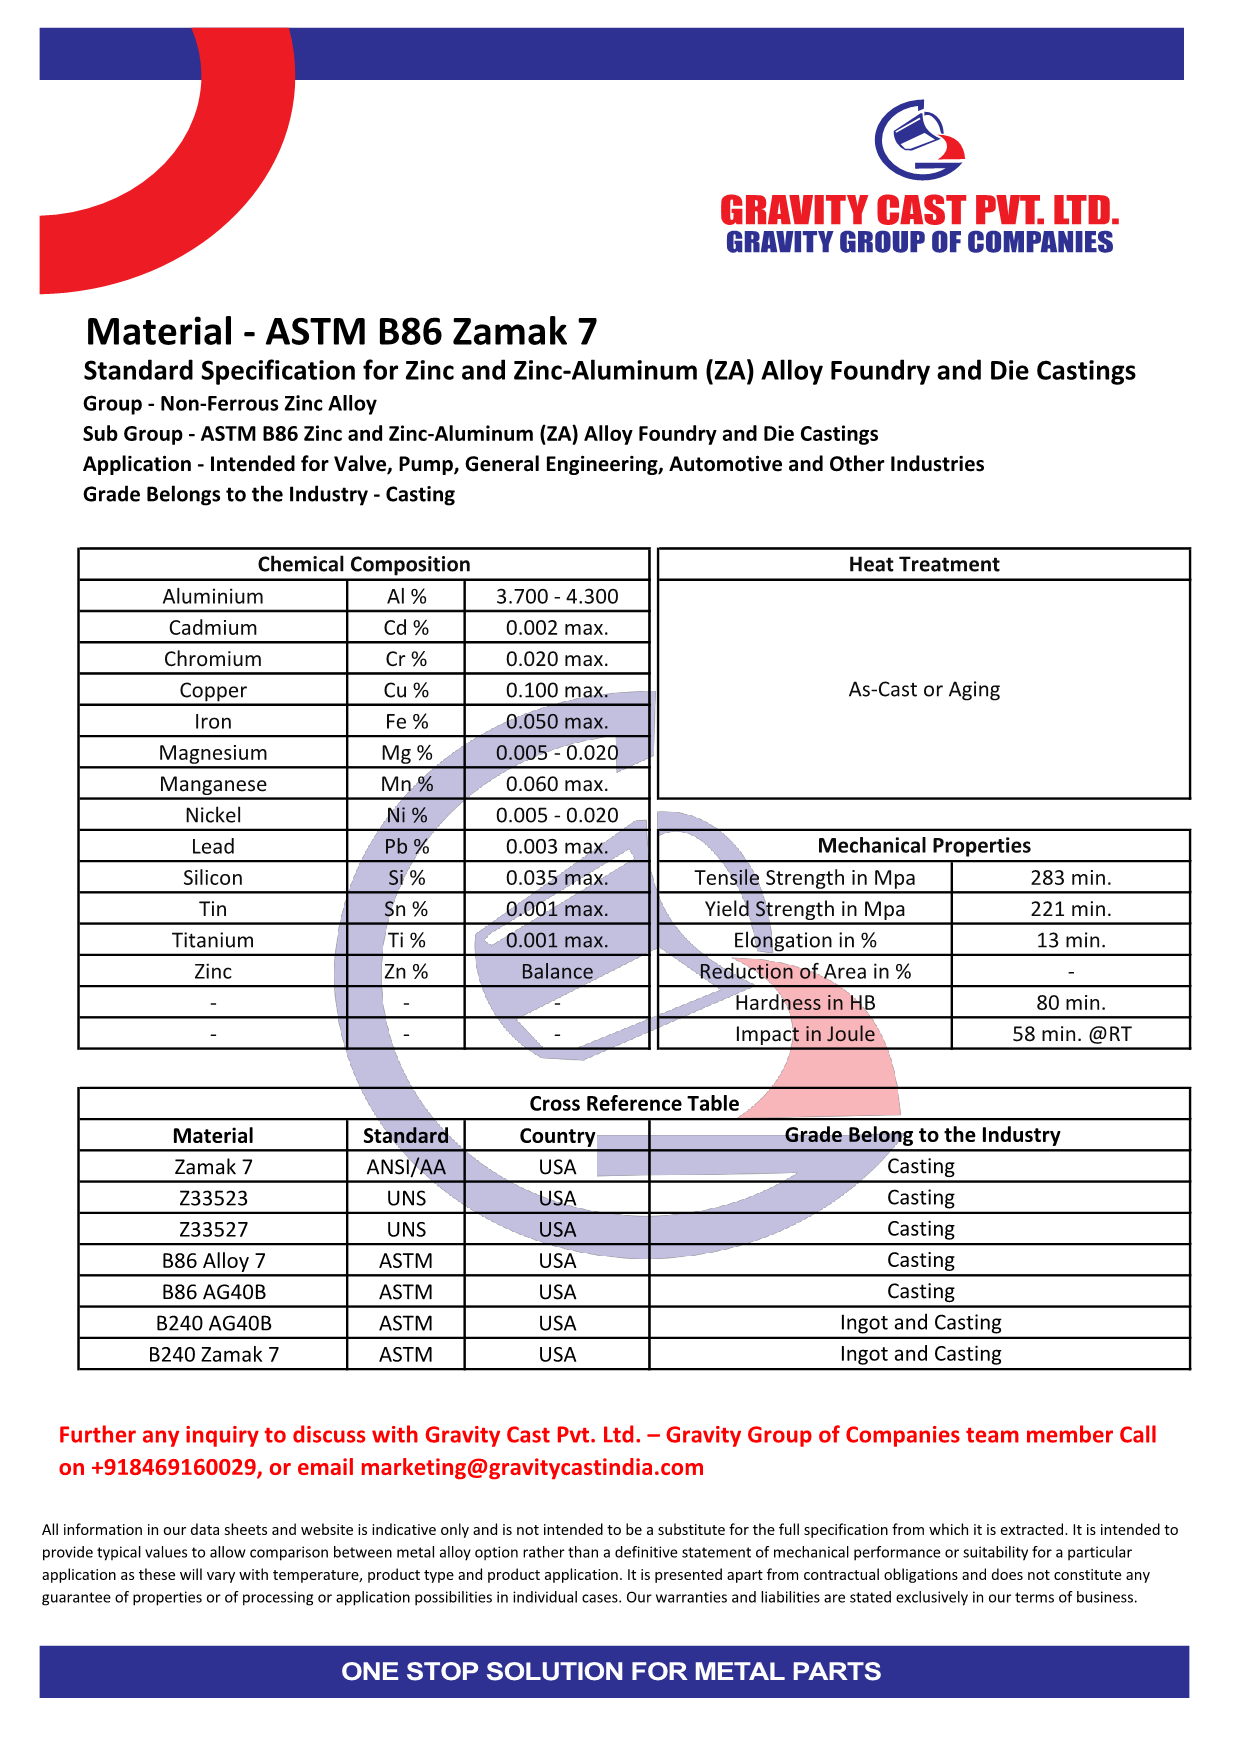 ASTM B86 Zamak 7.pdf